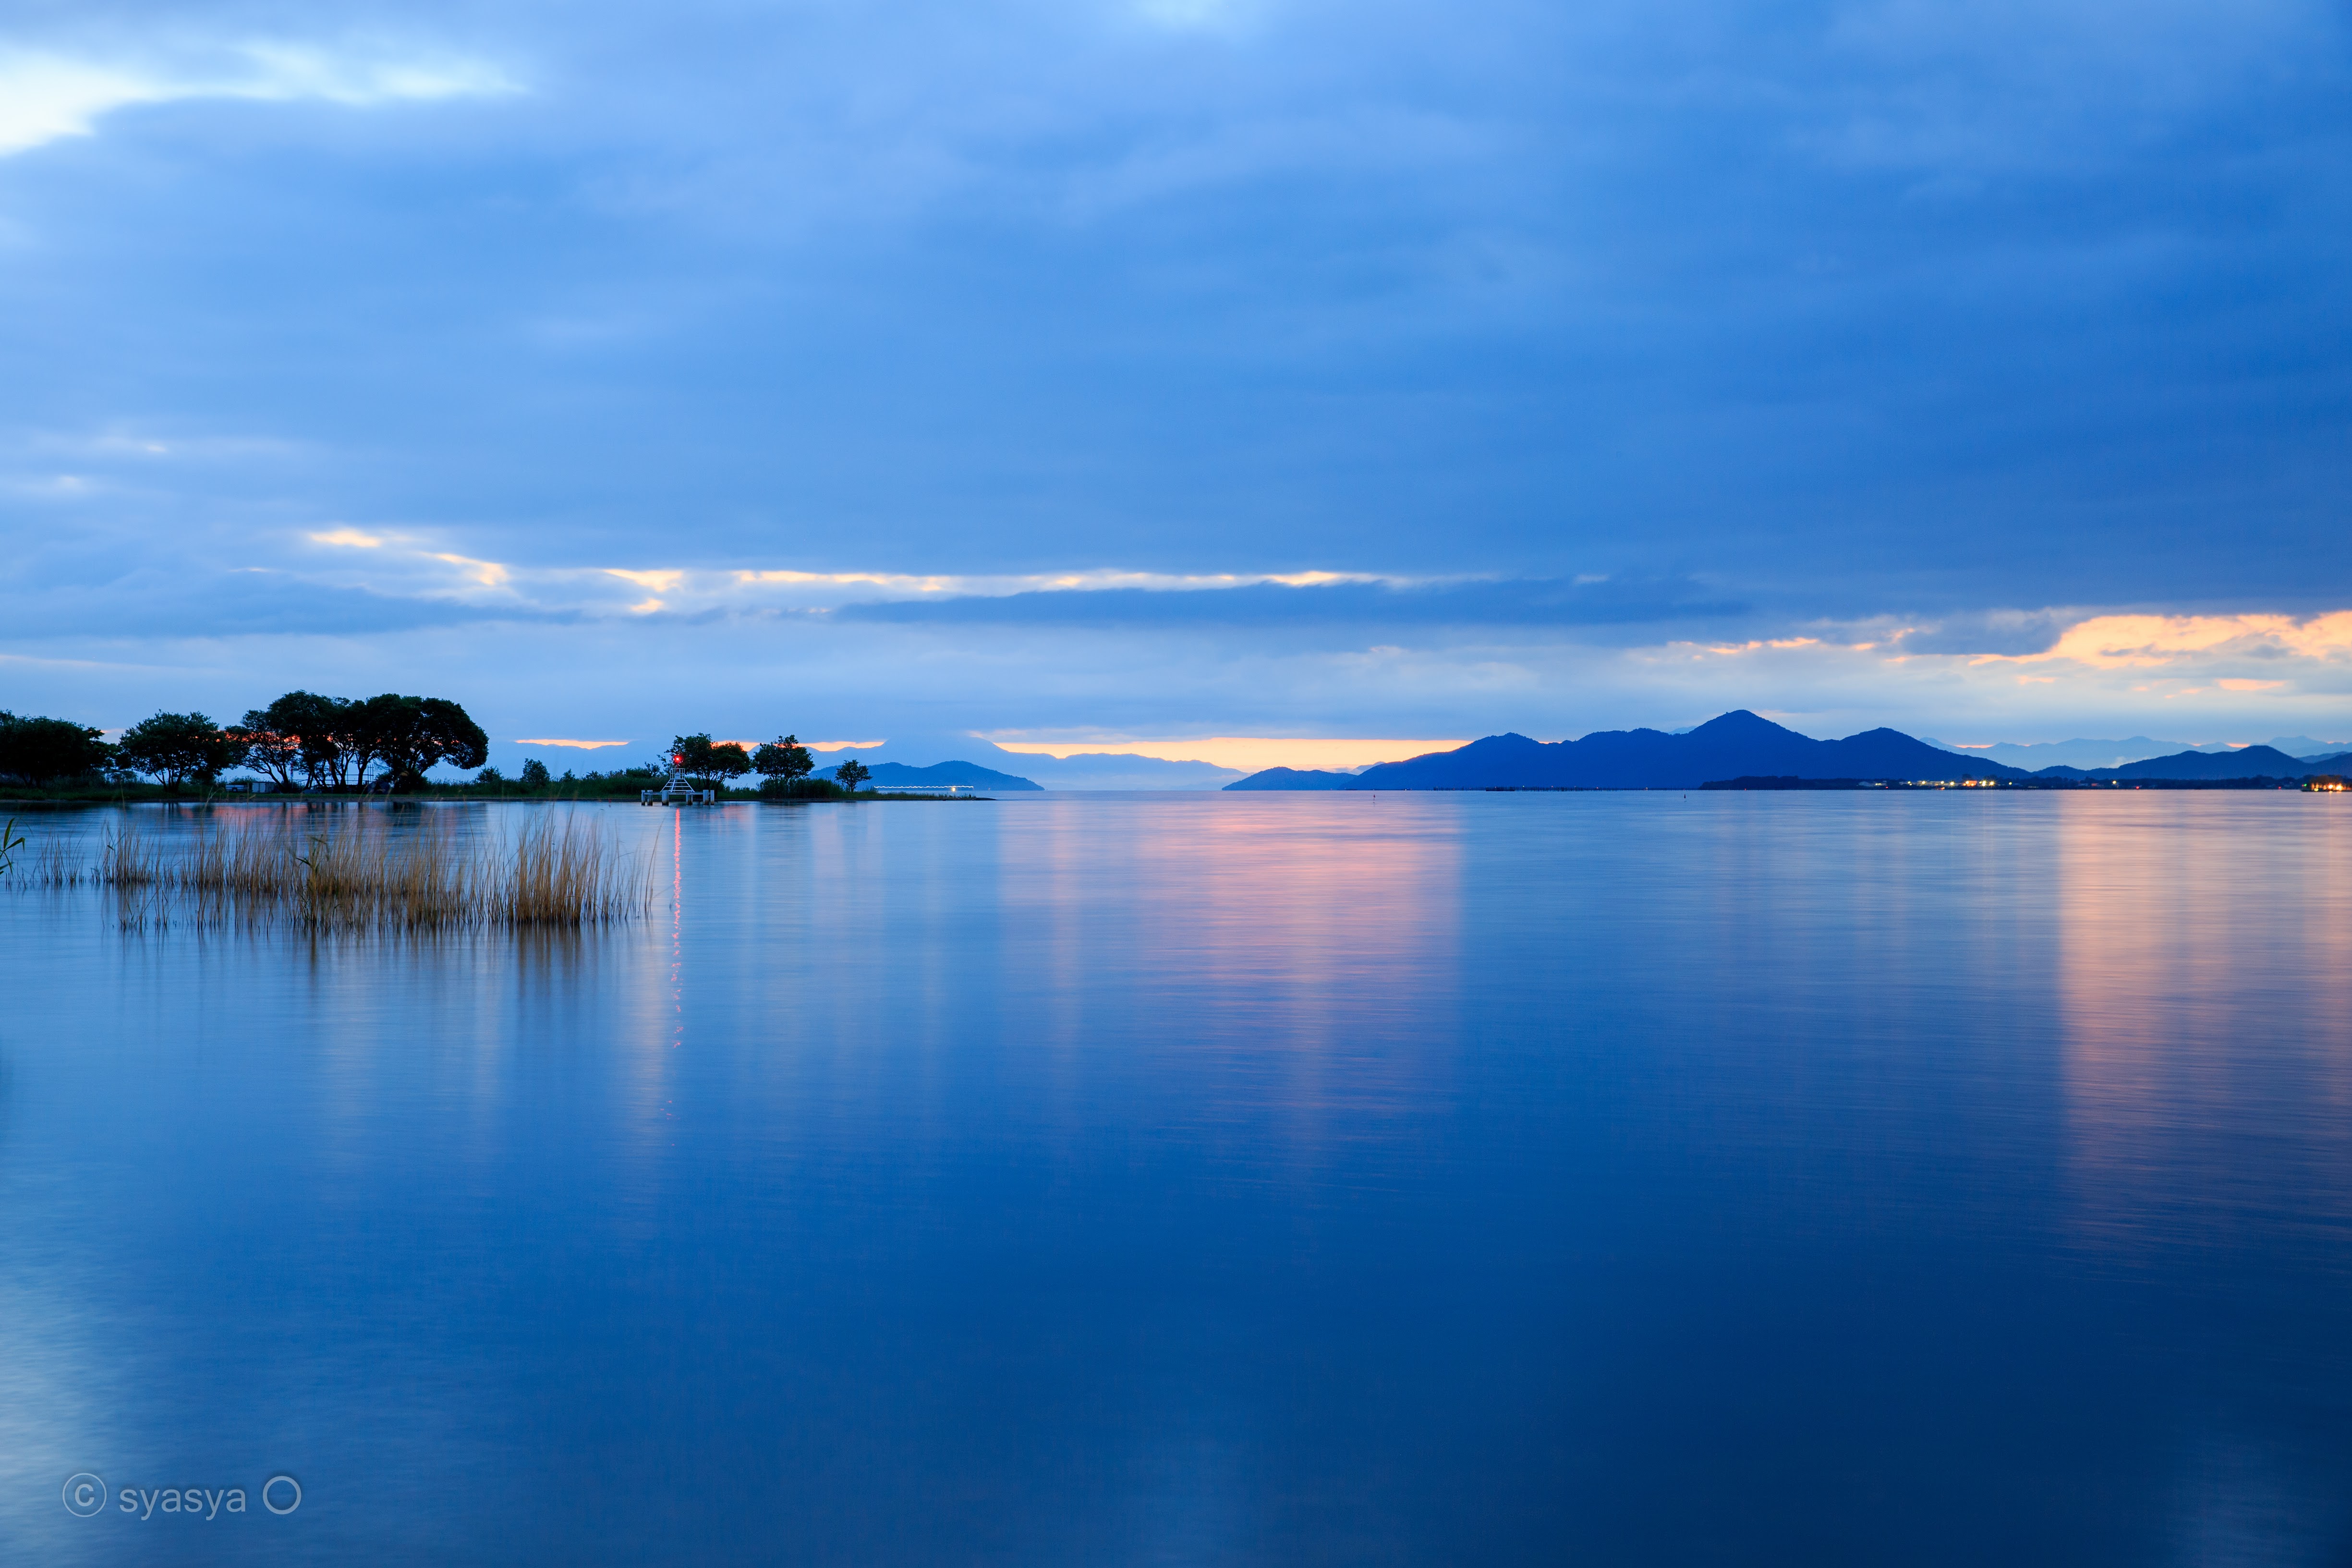 日本最大の湖、琵琶湖の絶景レイクビューが美しい「滋賀県」 | Discover Japan | ディスカバー・ジャパン